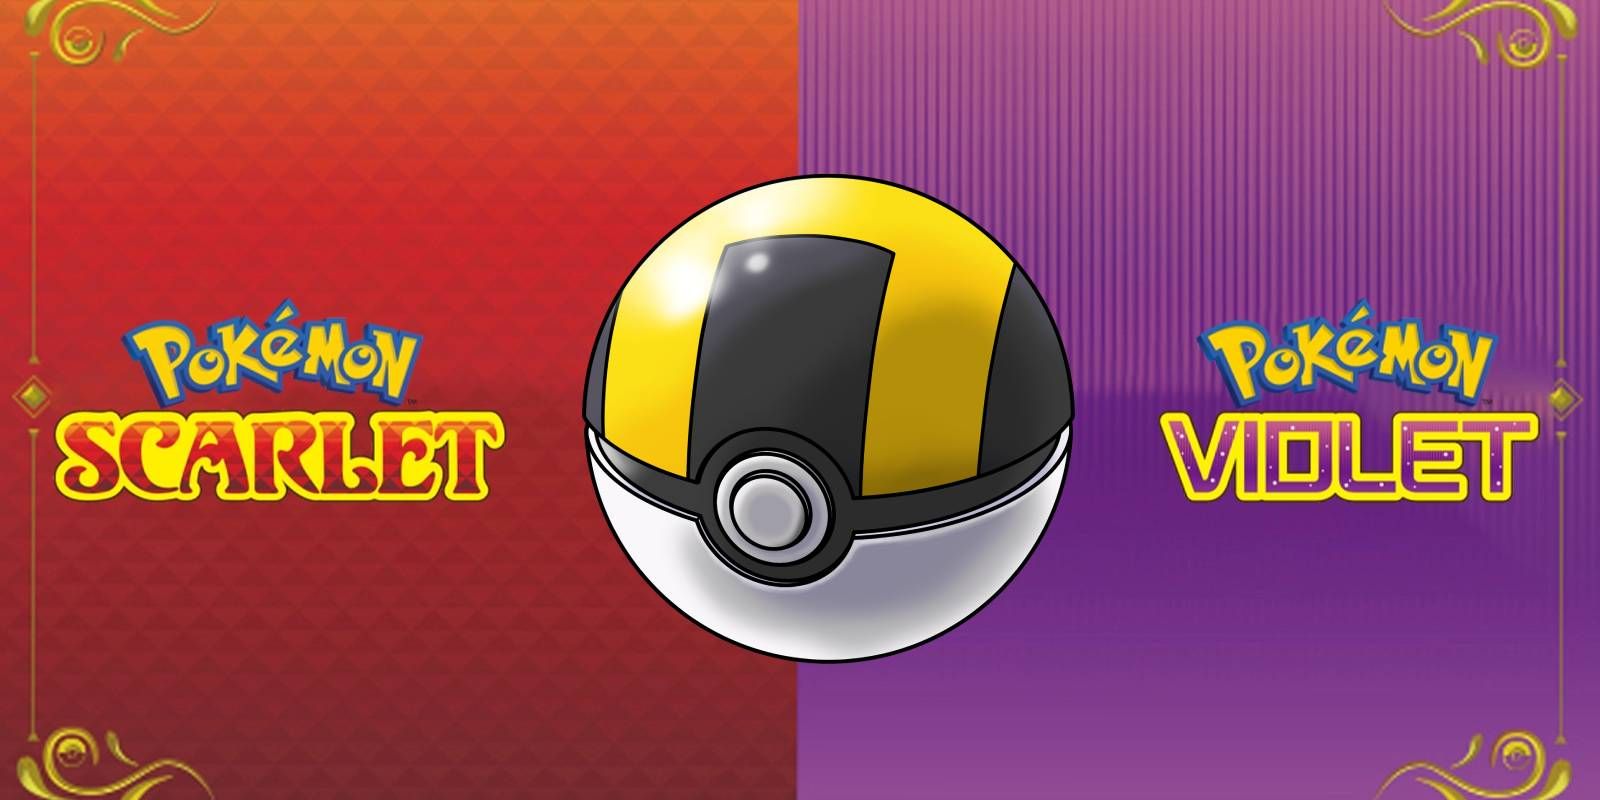 Pokemon Scarlet et Violet Ultra Ball en couche avec les deux logos de jeu